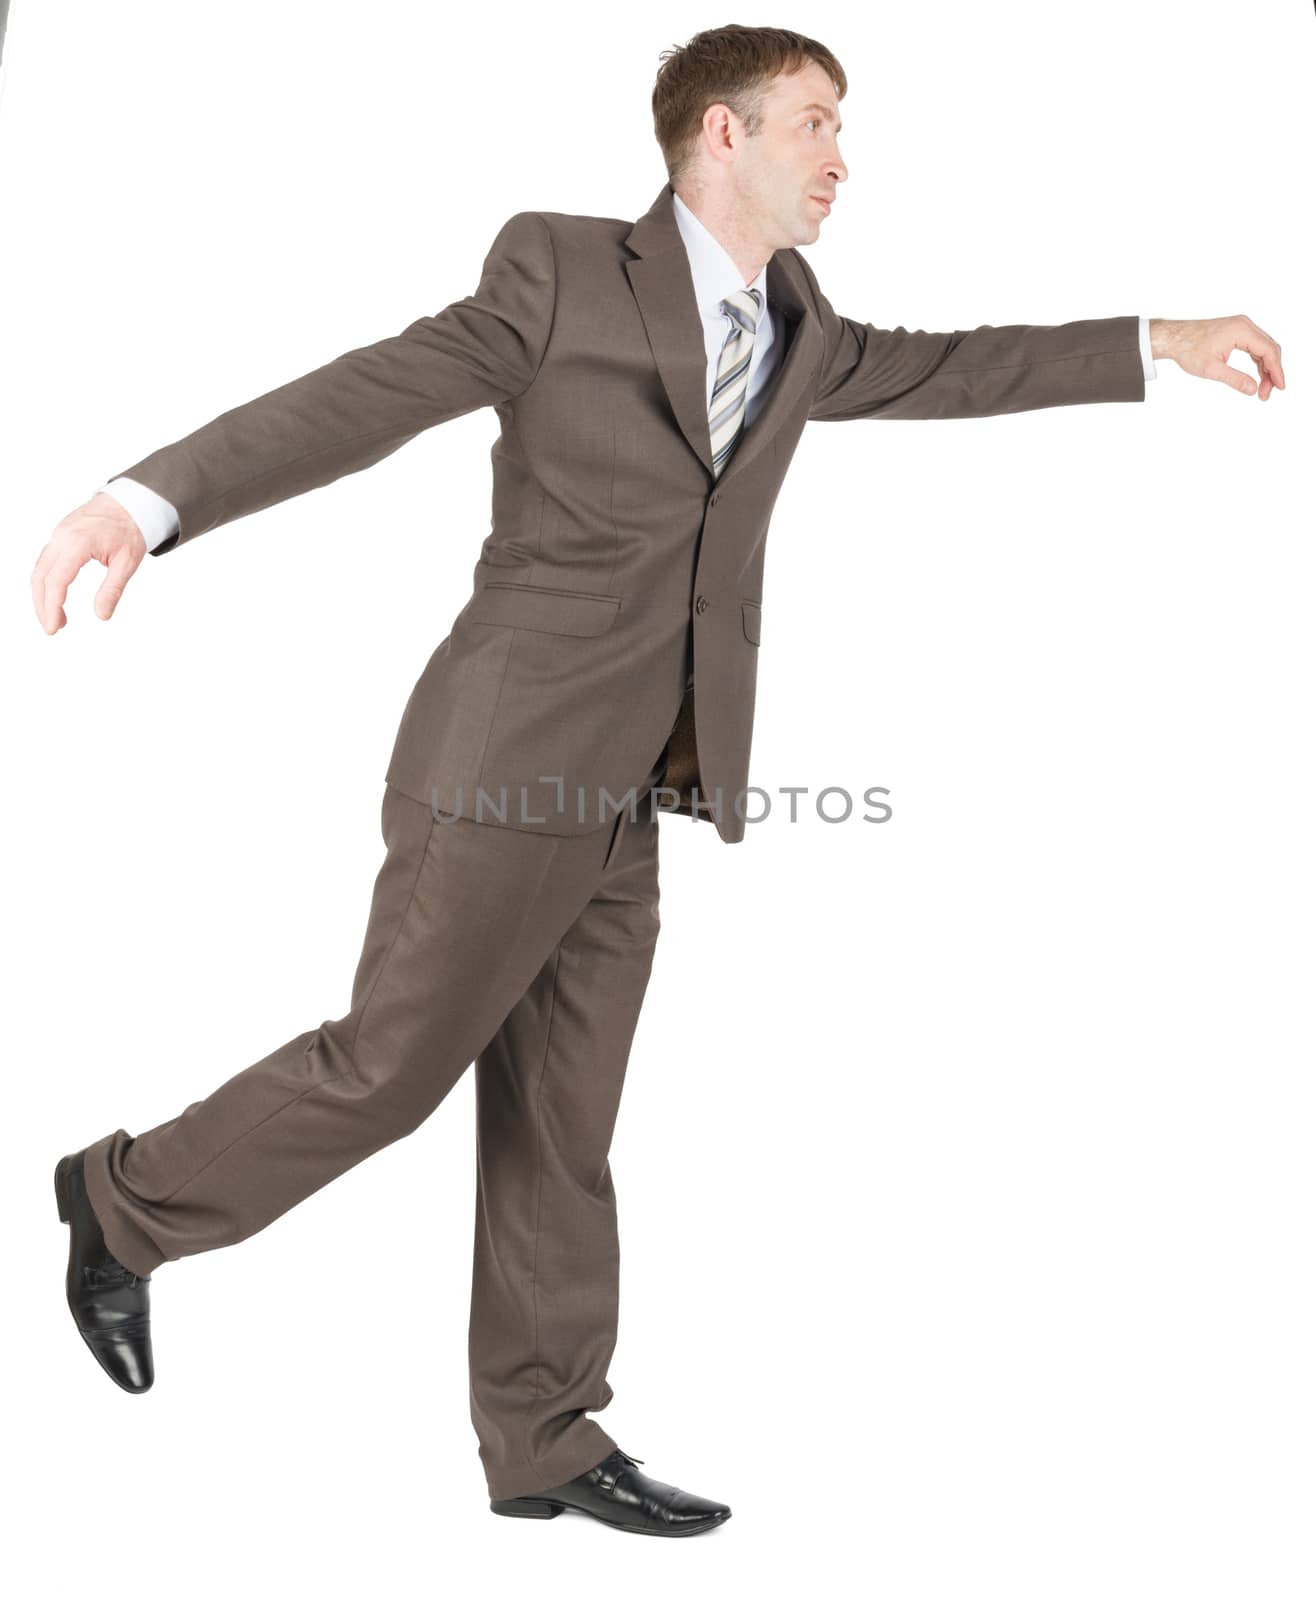 Businessman balancing on one leg isolated on white background